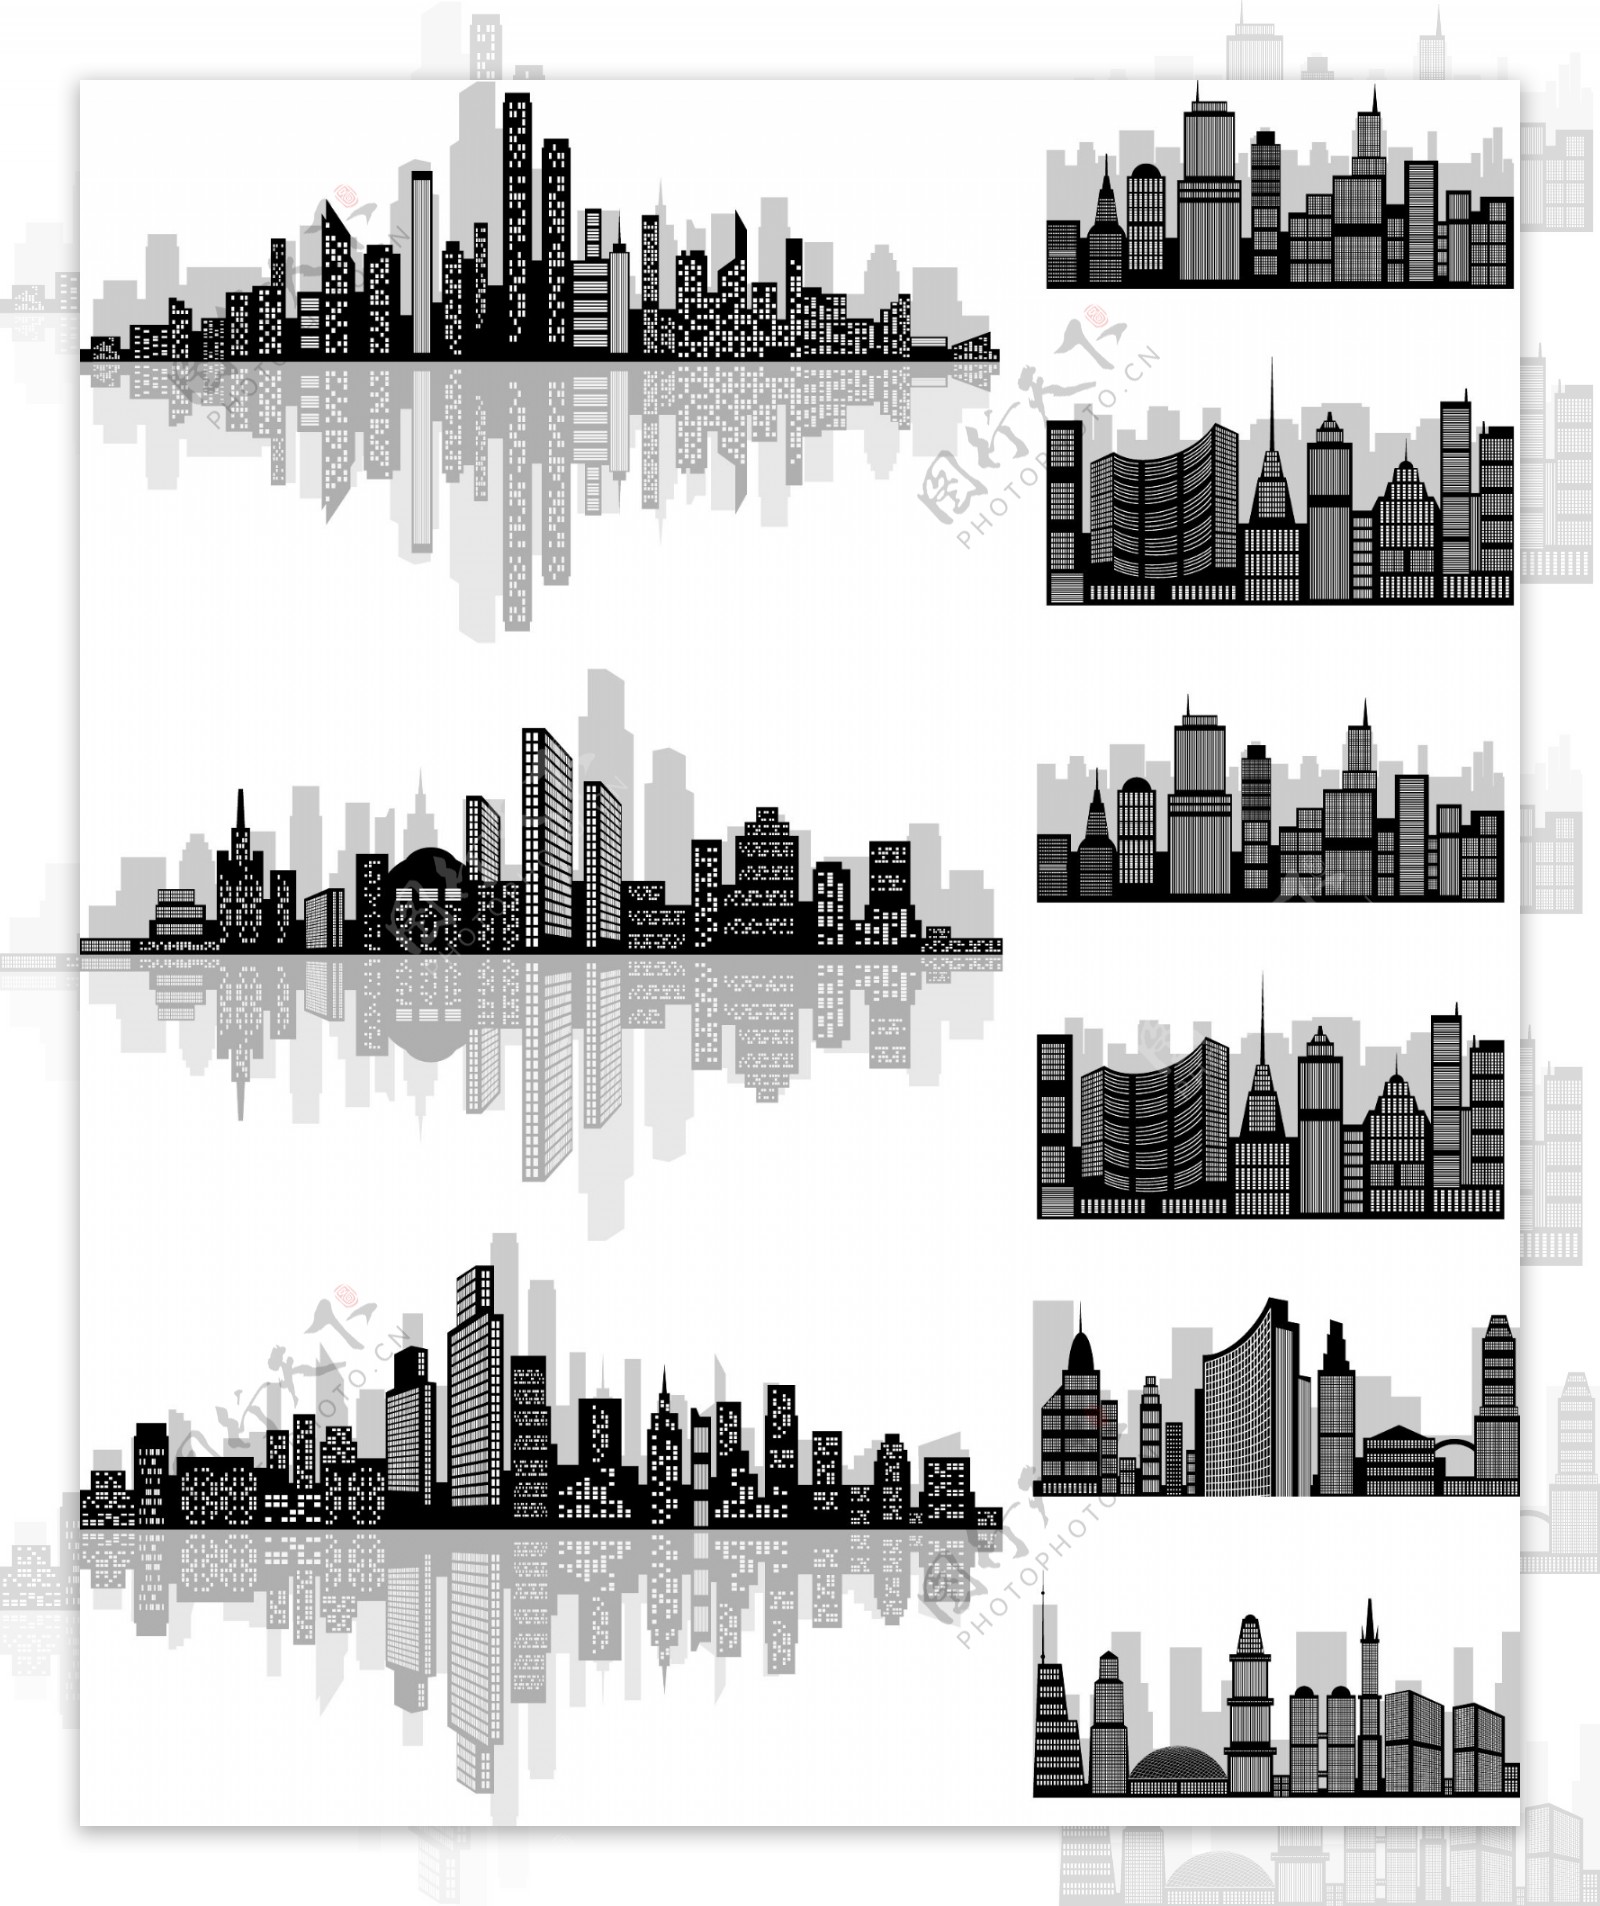 黑白城市建筑插画